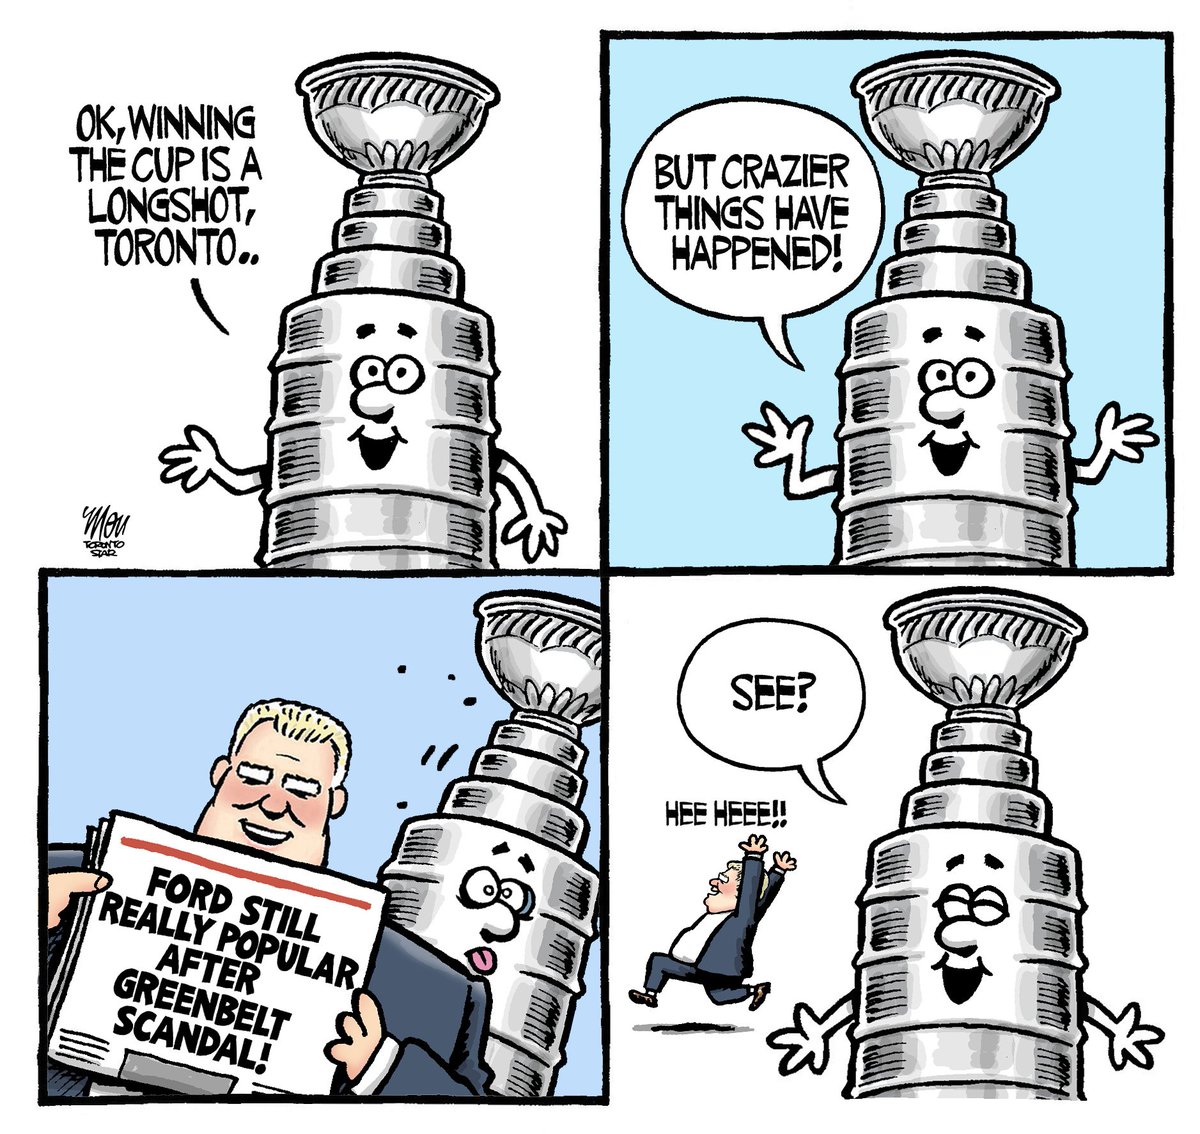 Please enjoy my cartoon for Tuesday's @TorontoStar